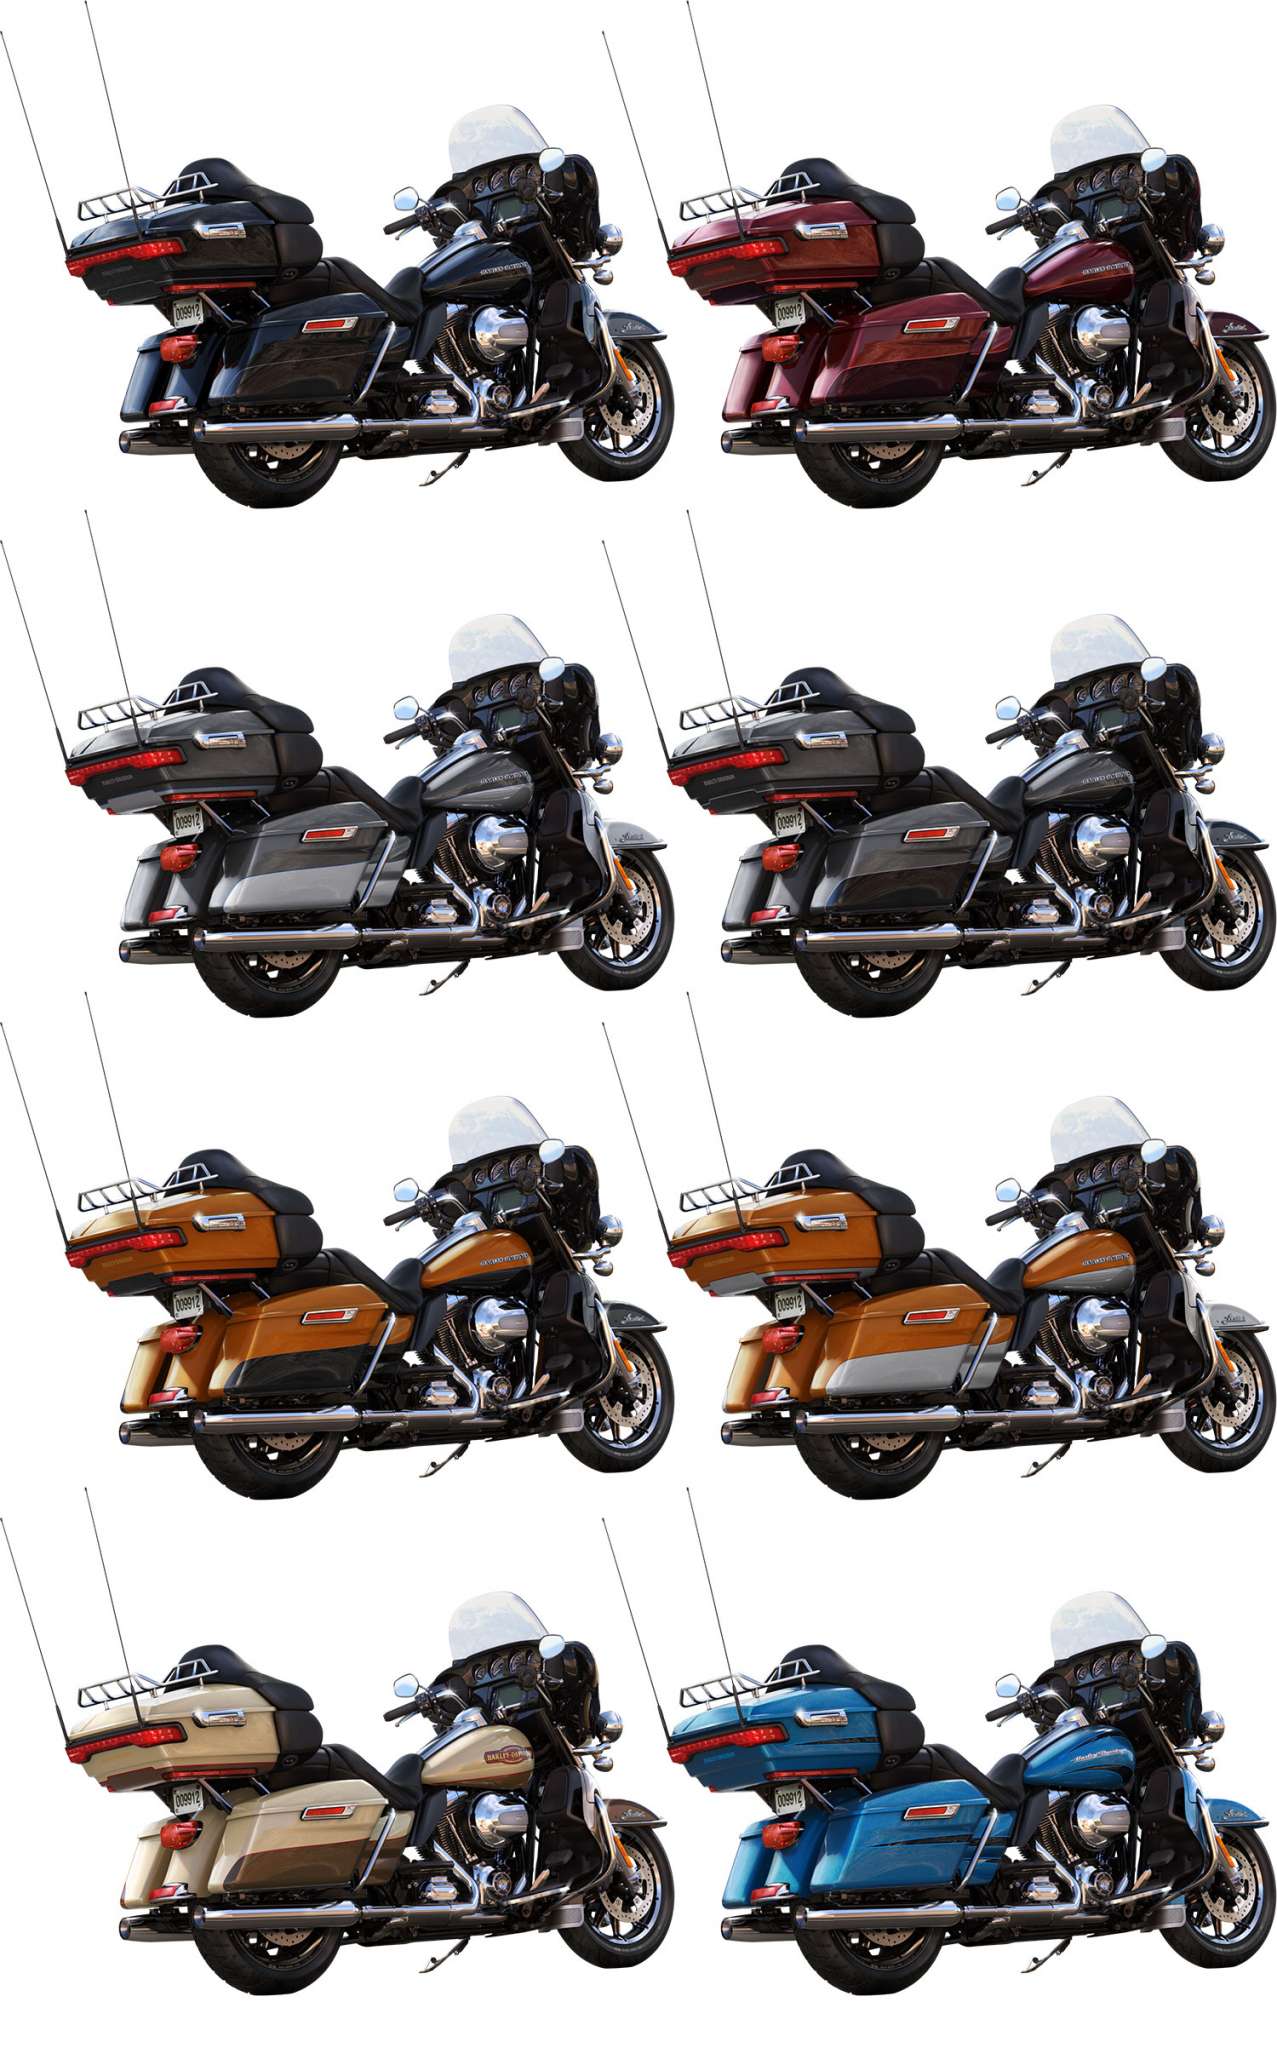 2014 Harley Davidson Flhtk Electra Glide Ultra Limited Review